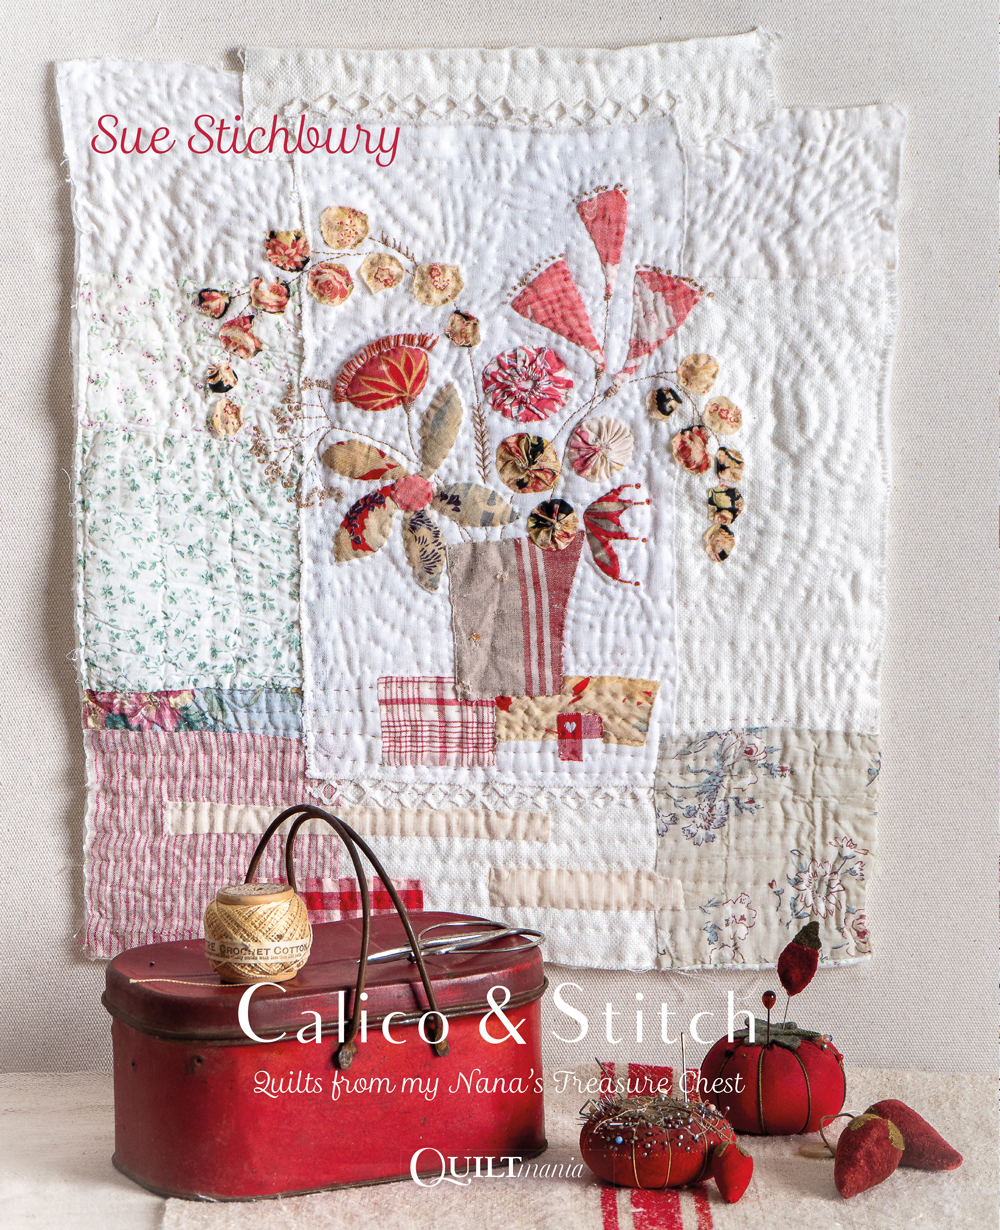 Calico & Stitch - Sue Stichbury - Quiltmania Inc.